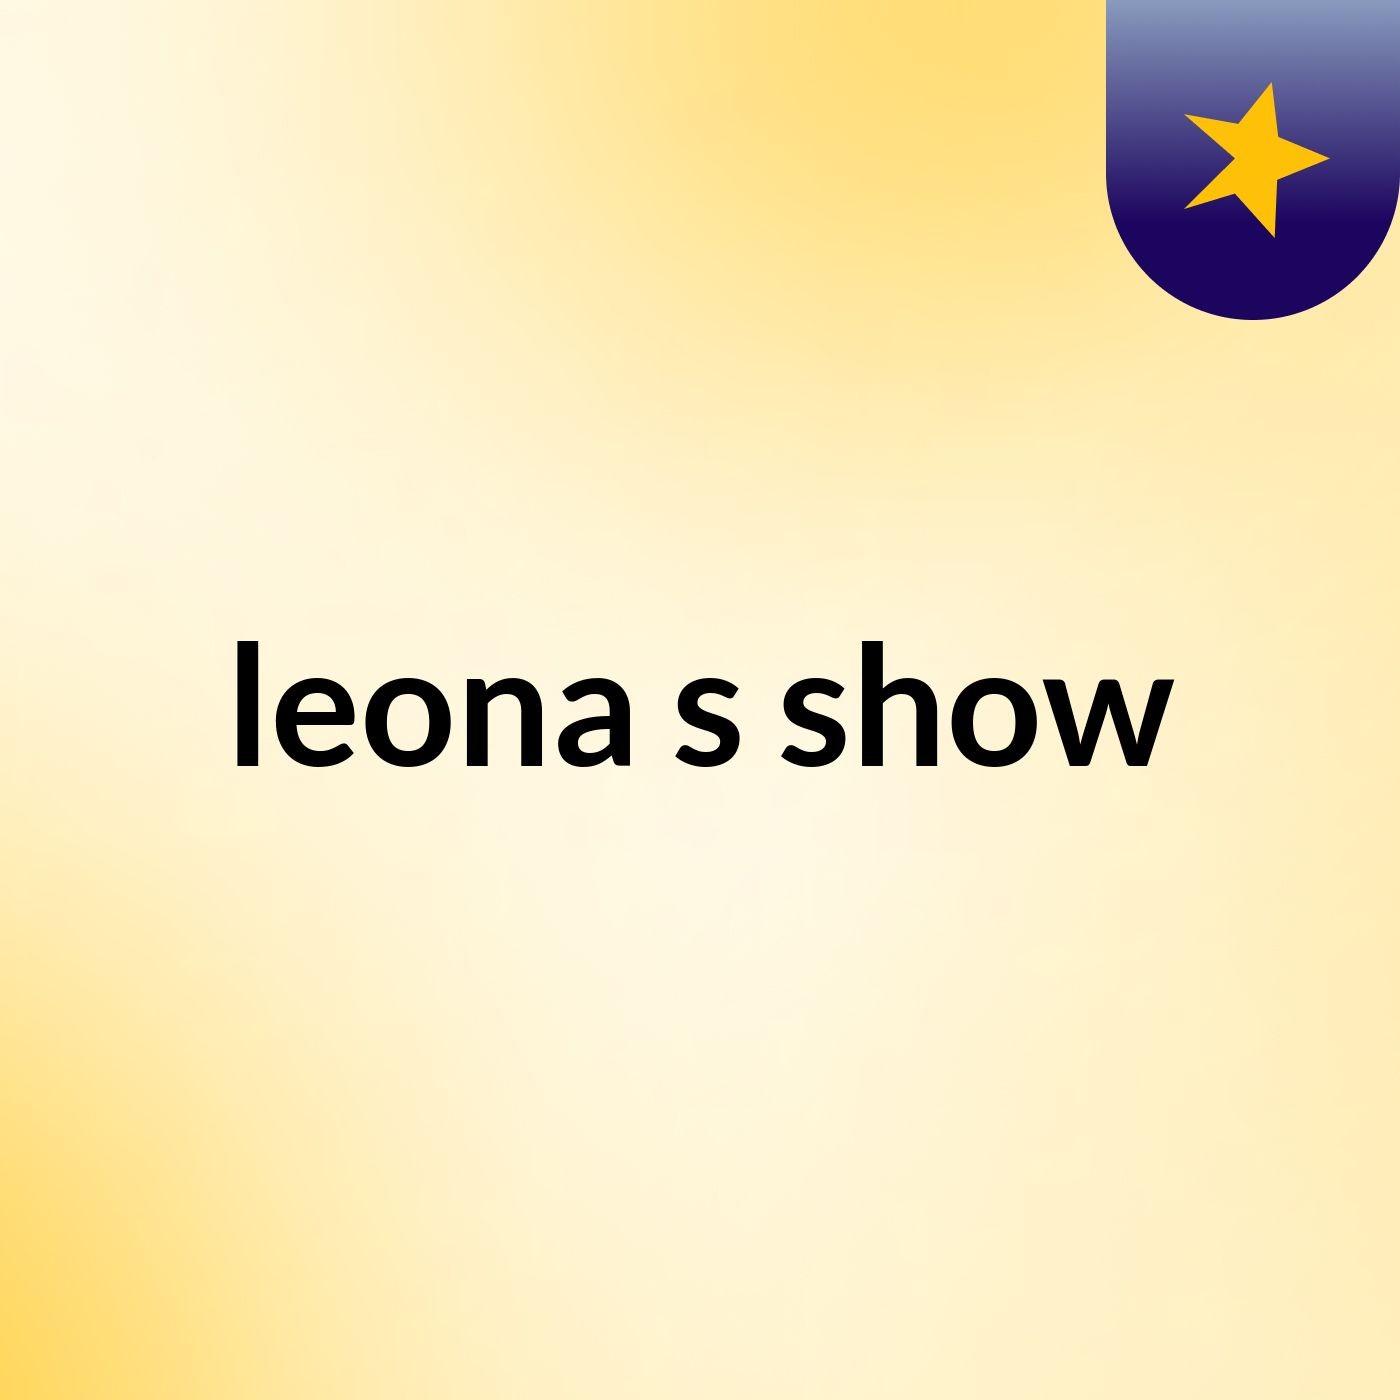 leona's show